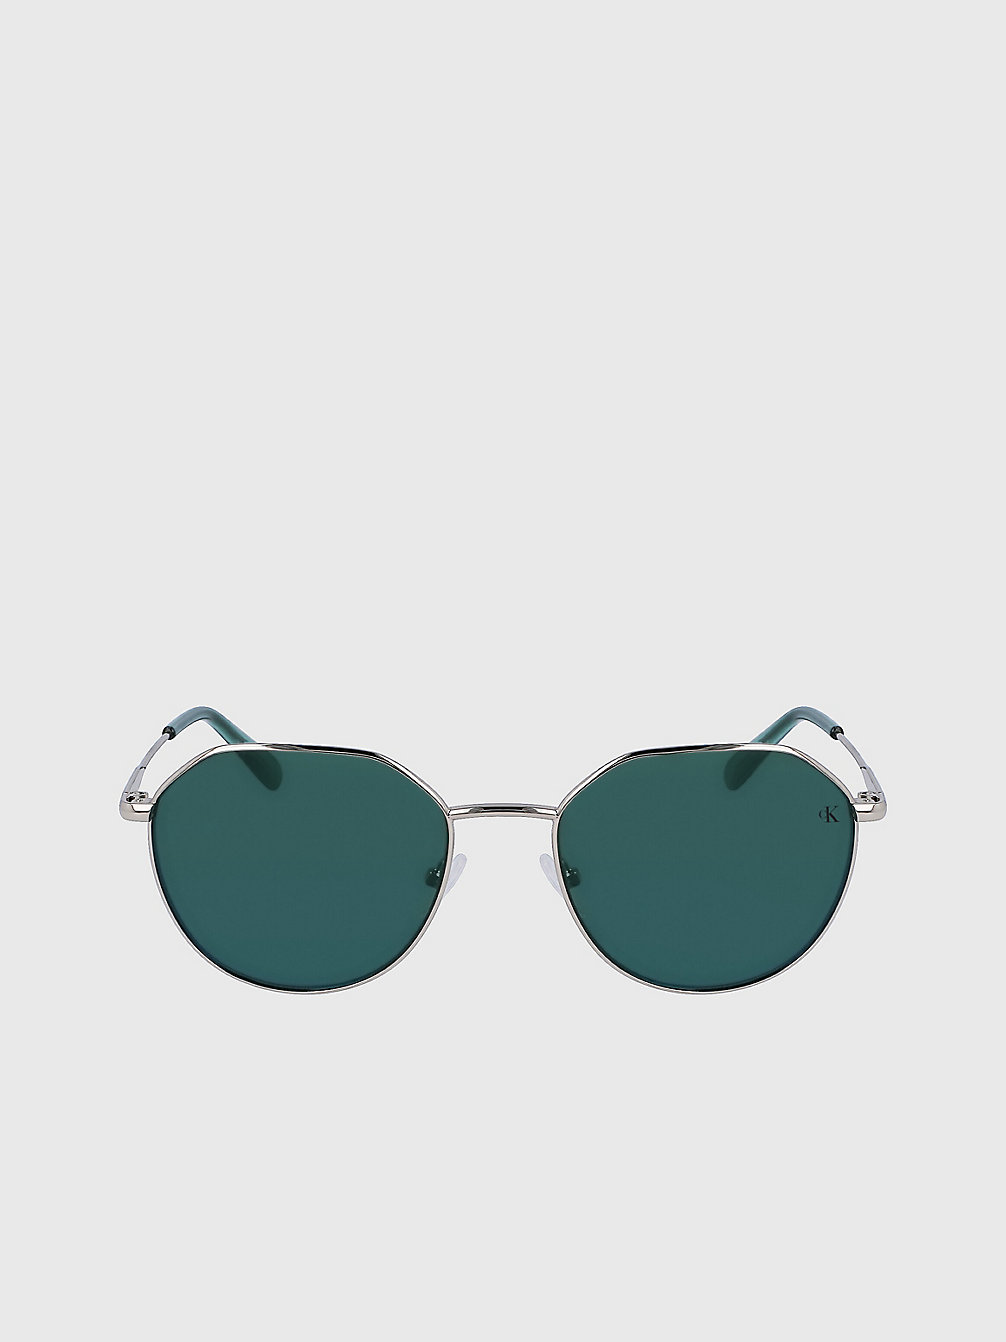 SILVER Round Sunglasses Ckj23201s undefined unisex Calvin Klein